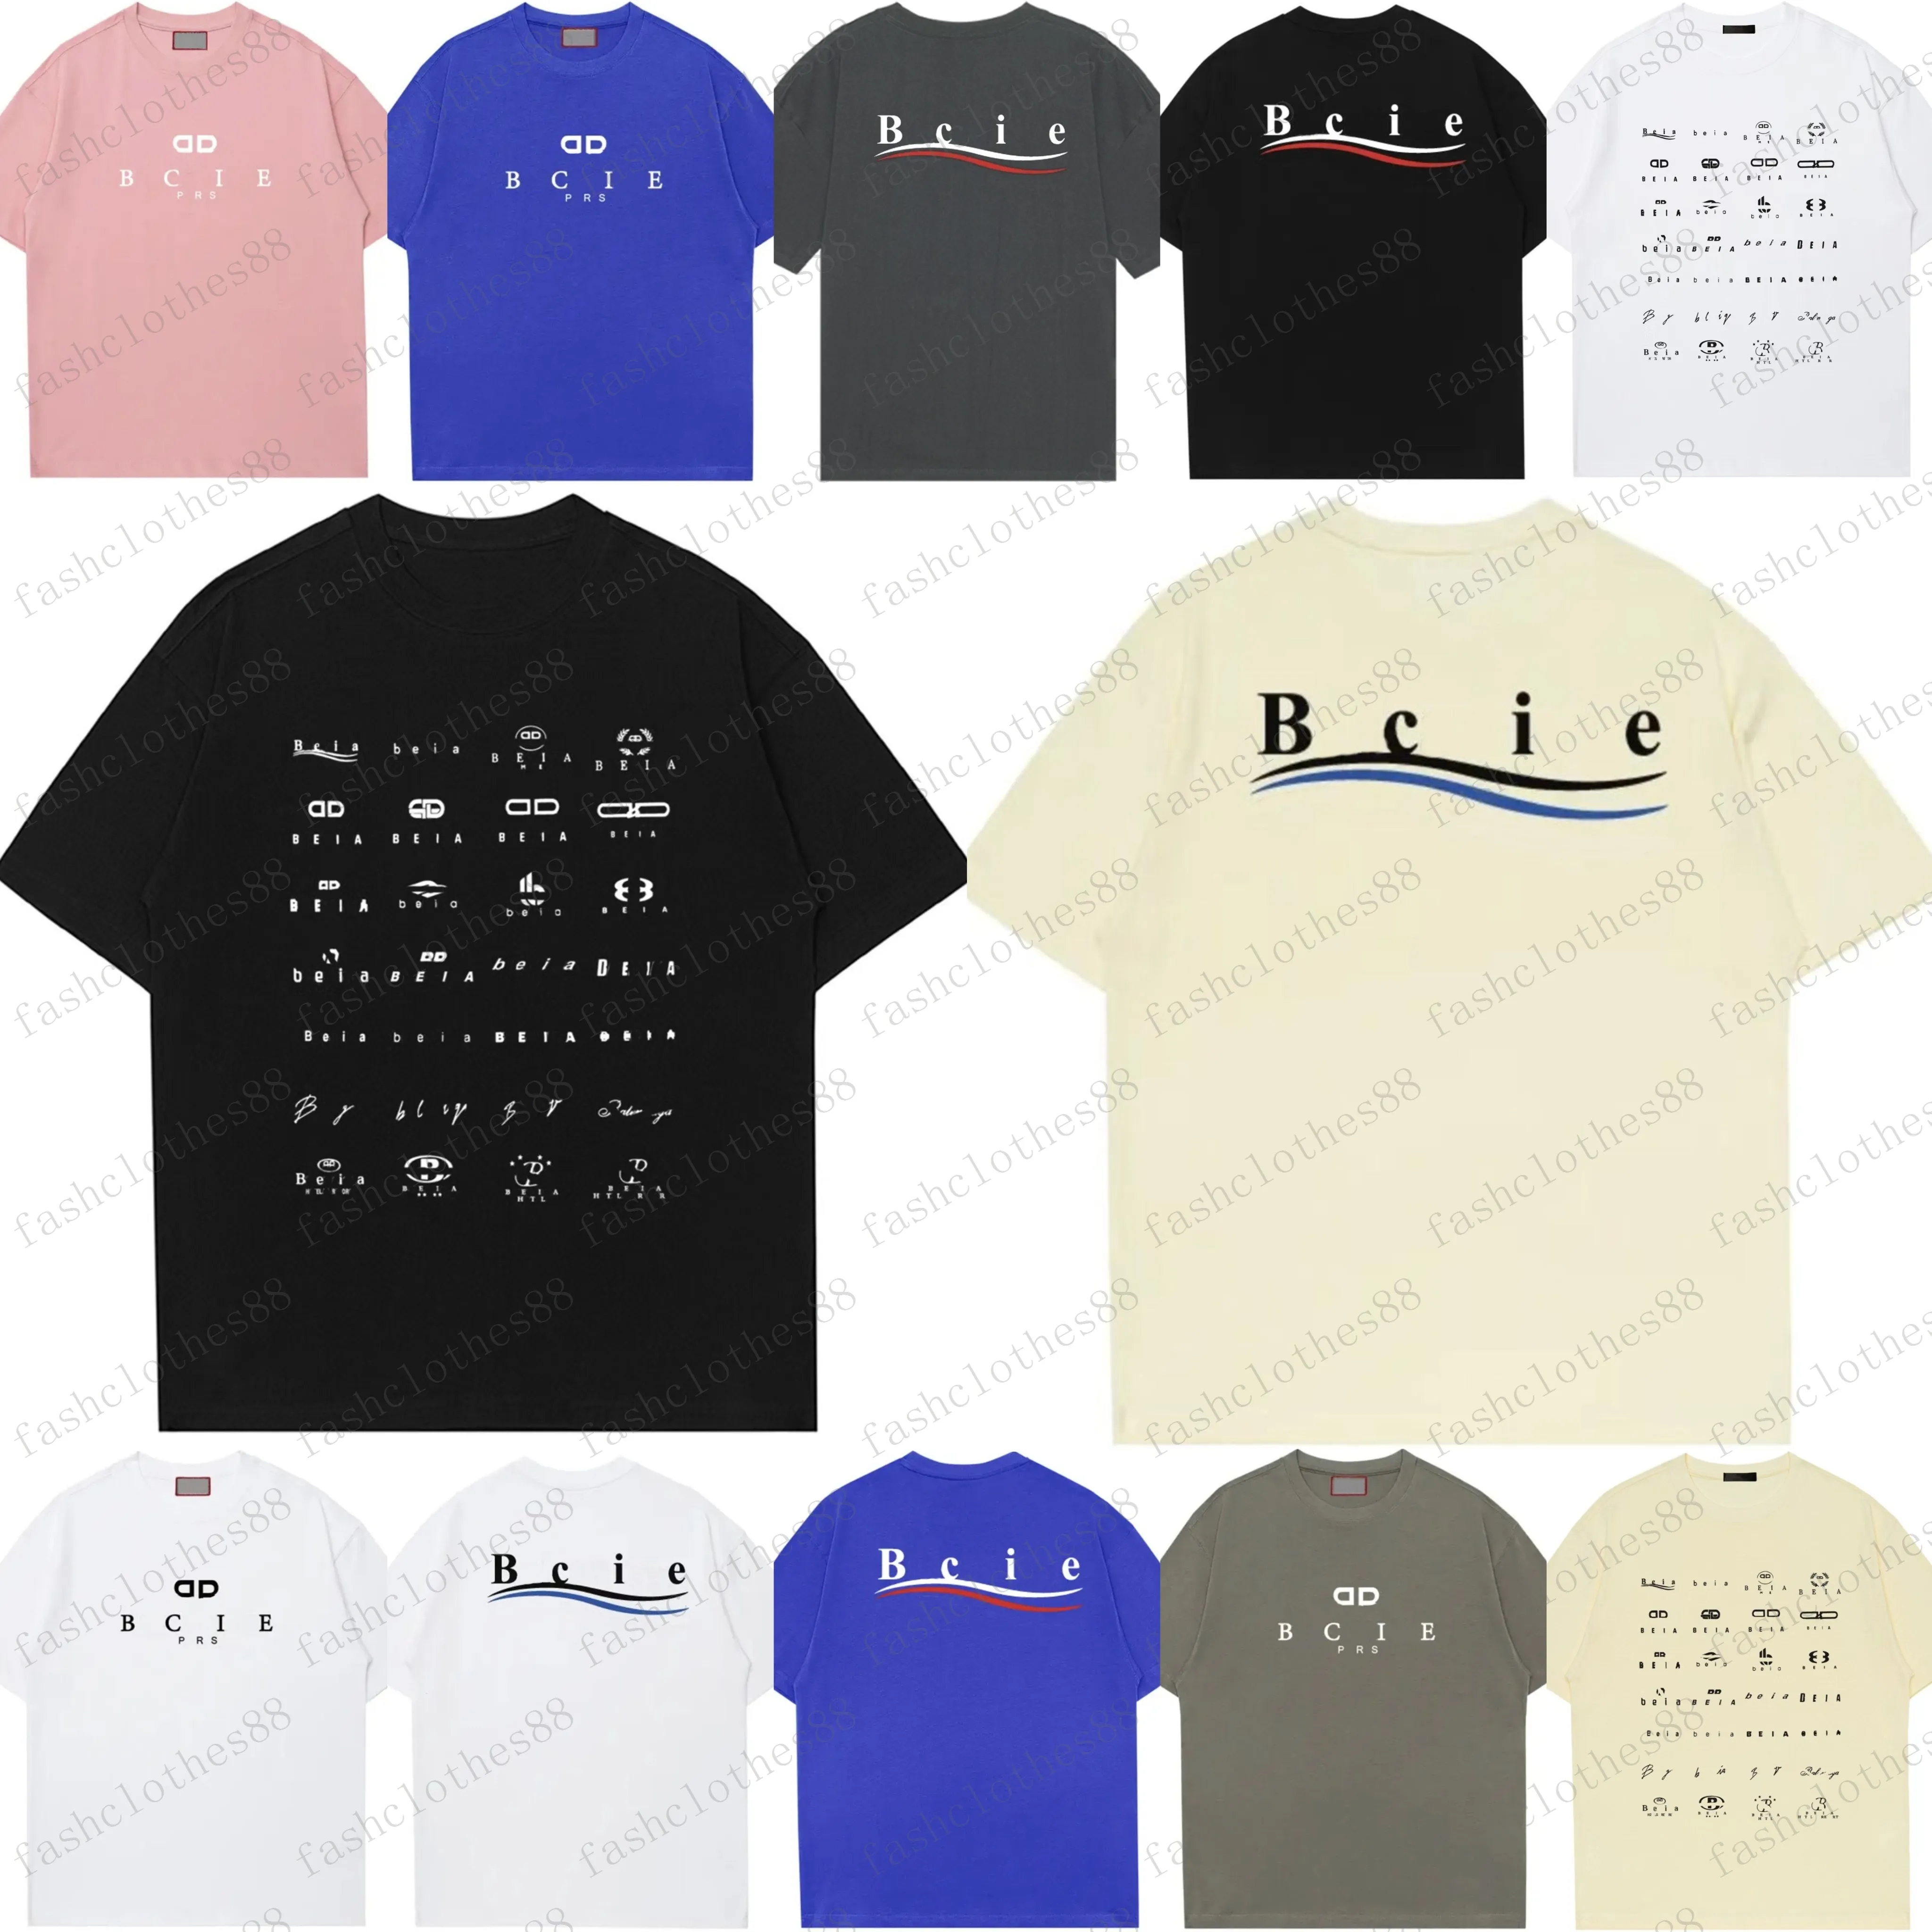 Mens Tasarımcı Band T Shirt Moda Siyah Beyaz Kısa Kollu Lüks Mektup Deseni T Shirt Boyutu S-XXXL